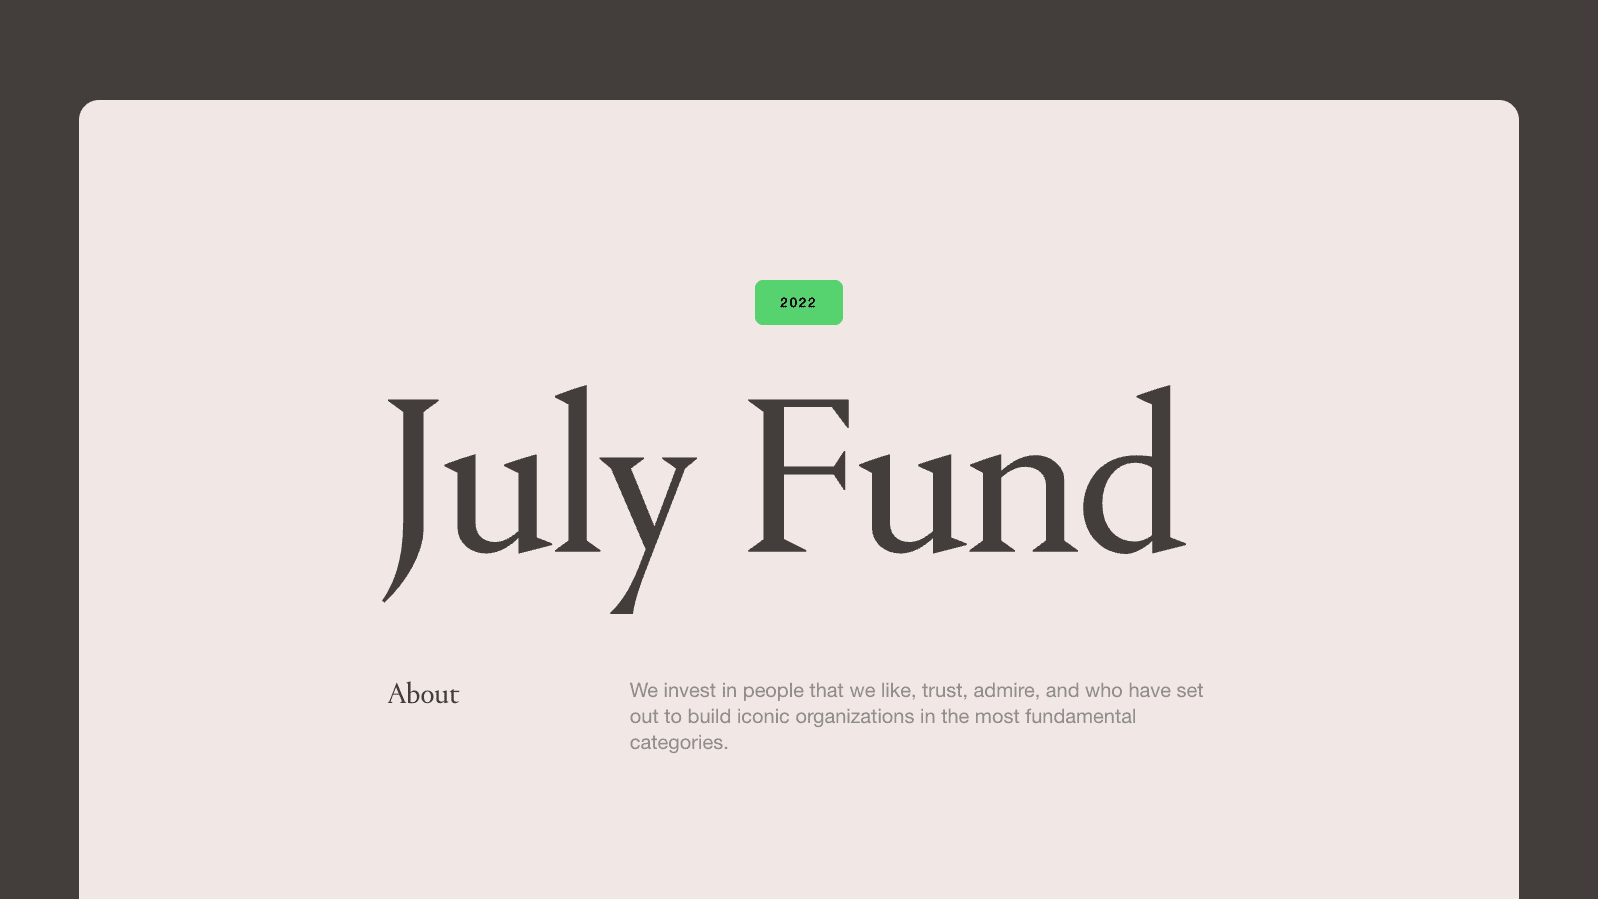 July Fund